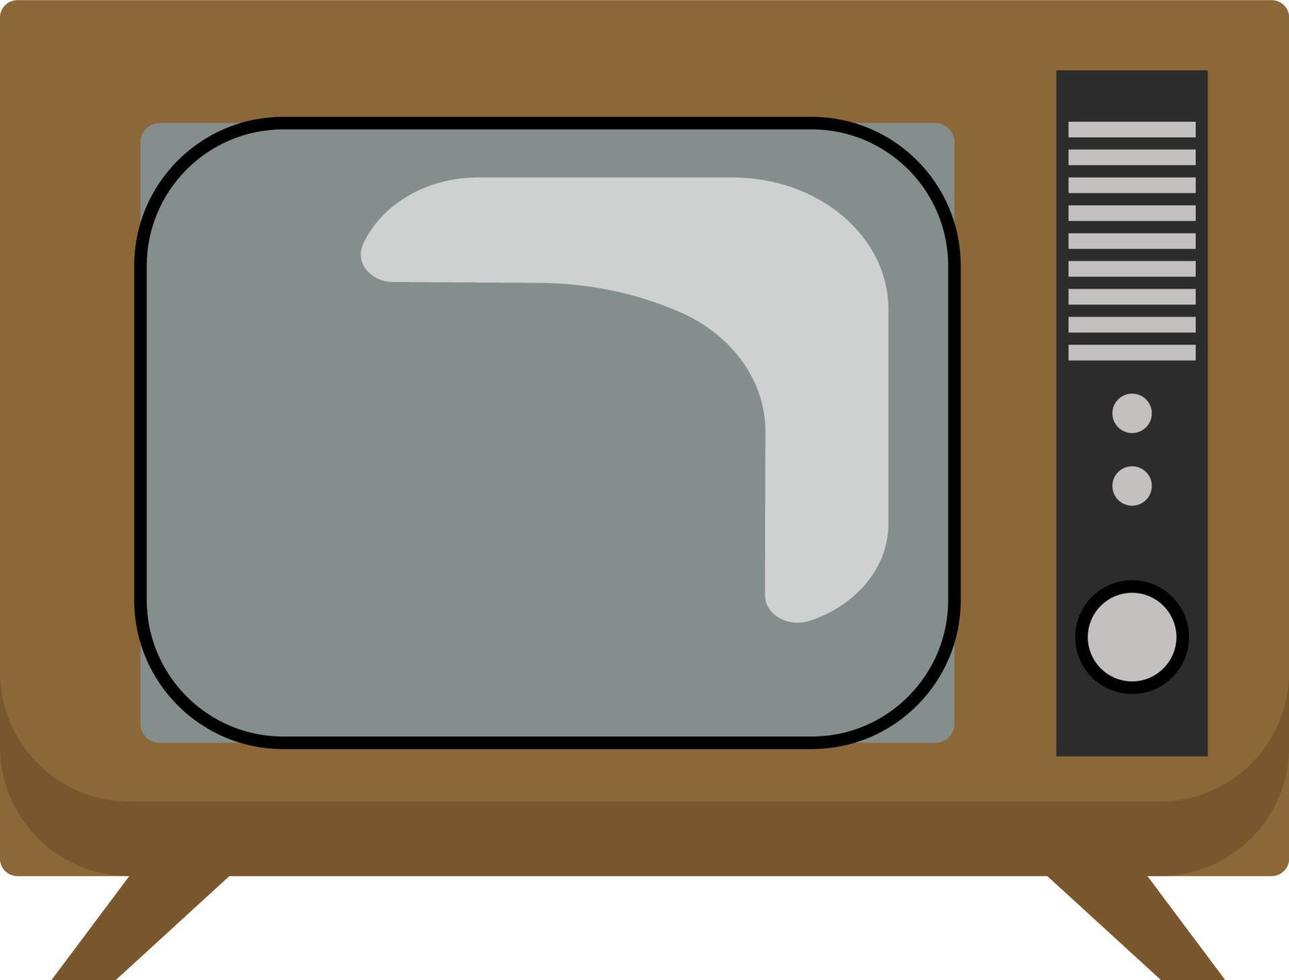 uma tv retrô, ilustração vetorial ou colorida. vetor